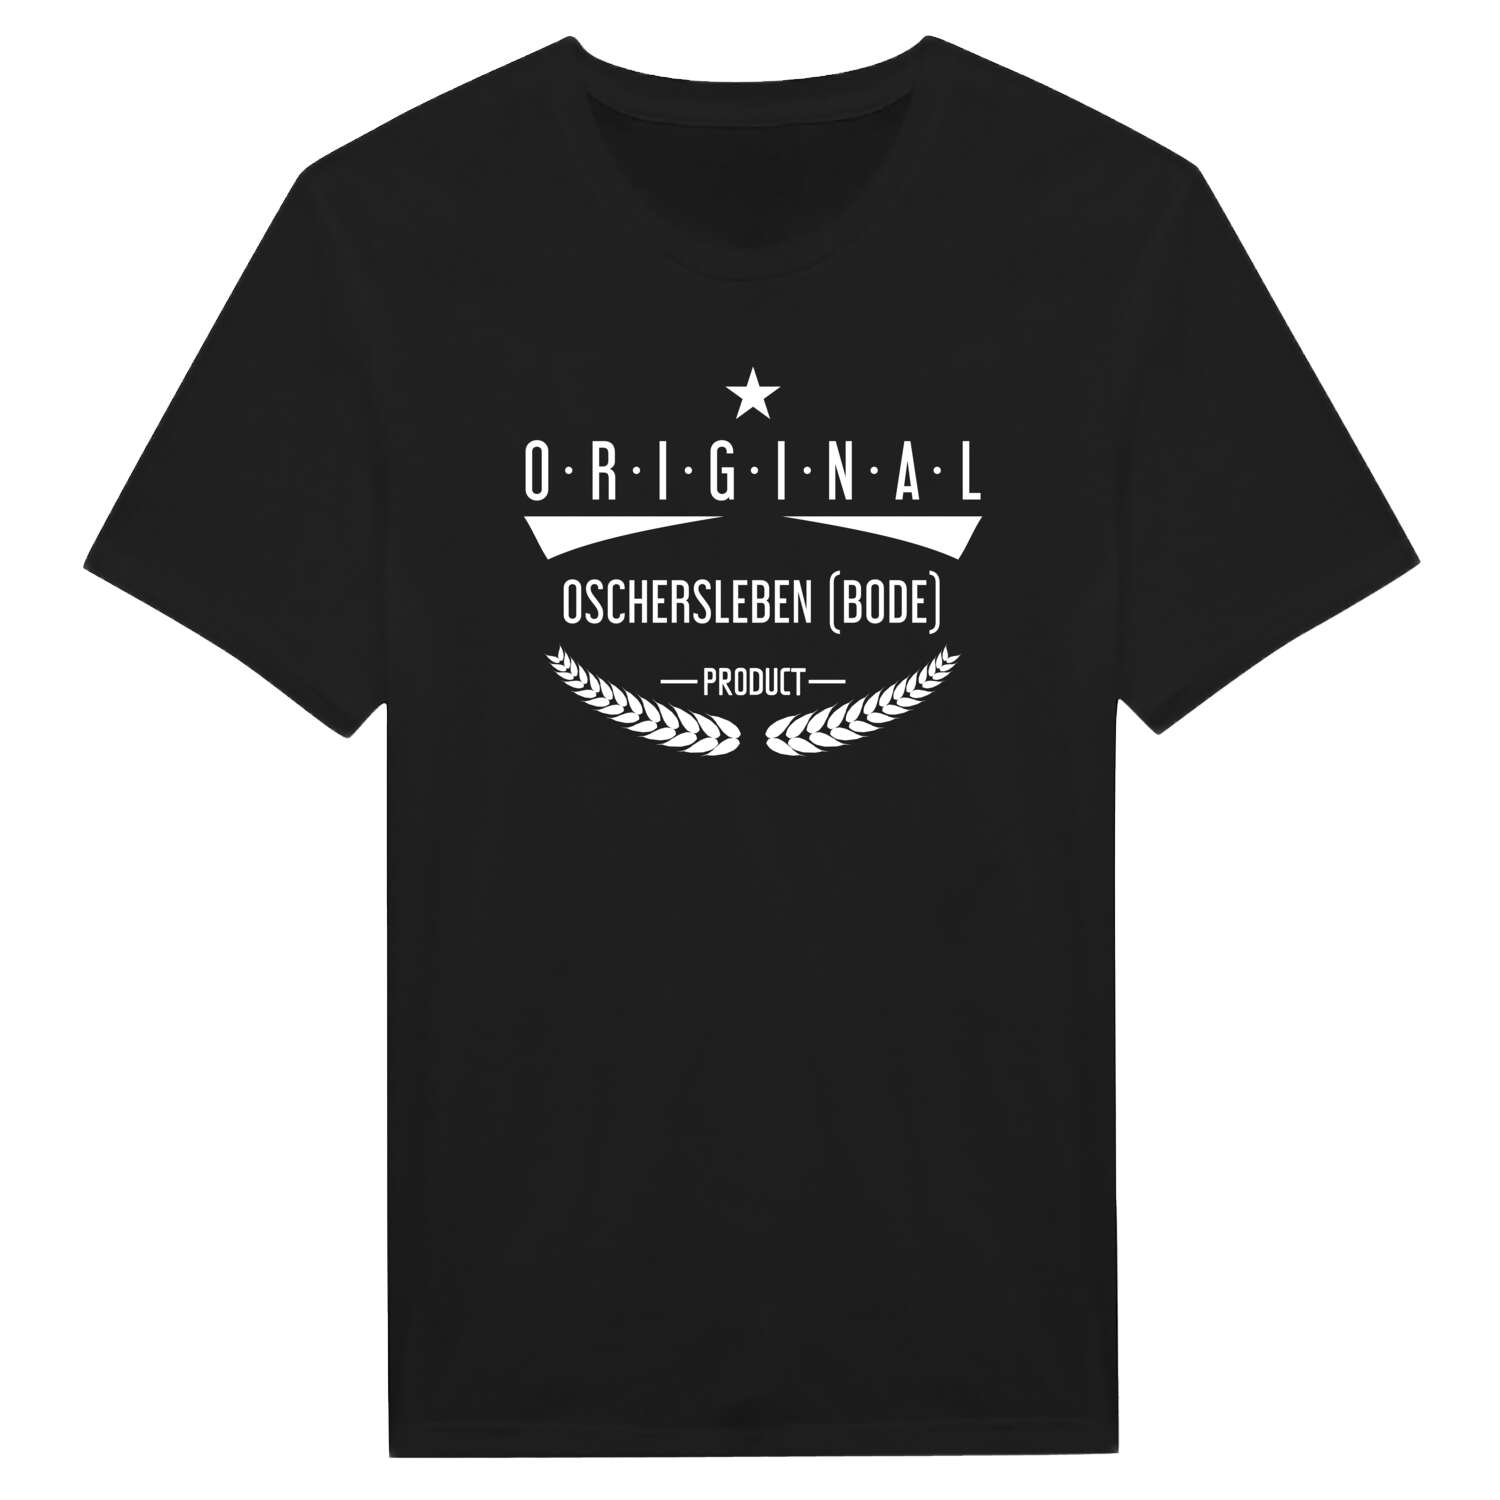 Oschersleben (Bode) T-Shirt »Original Product«